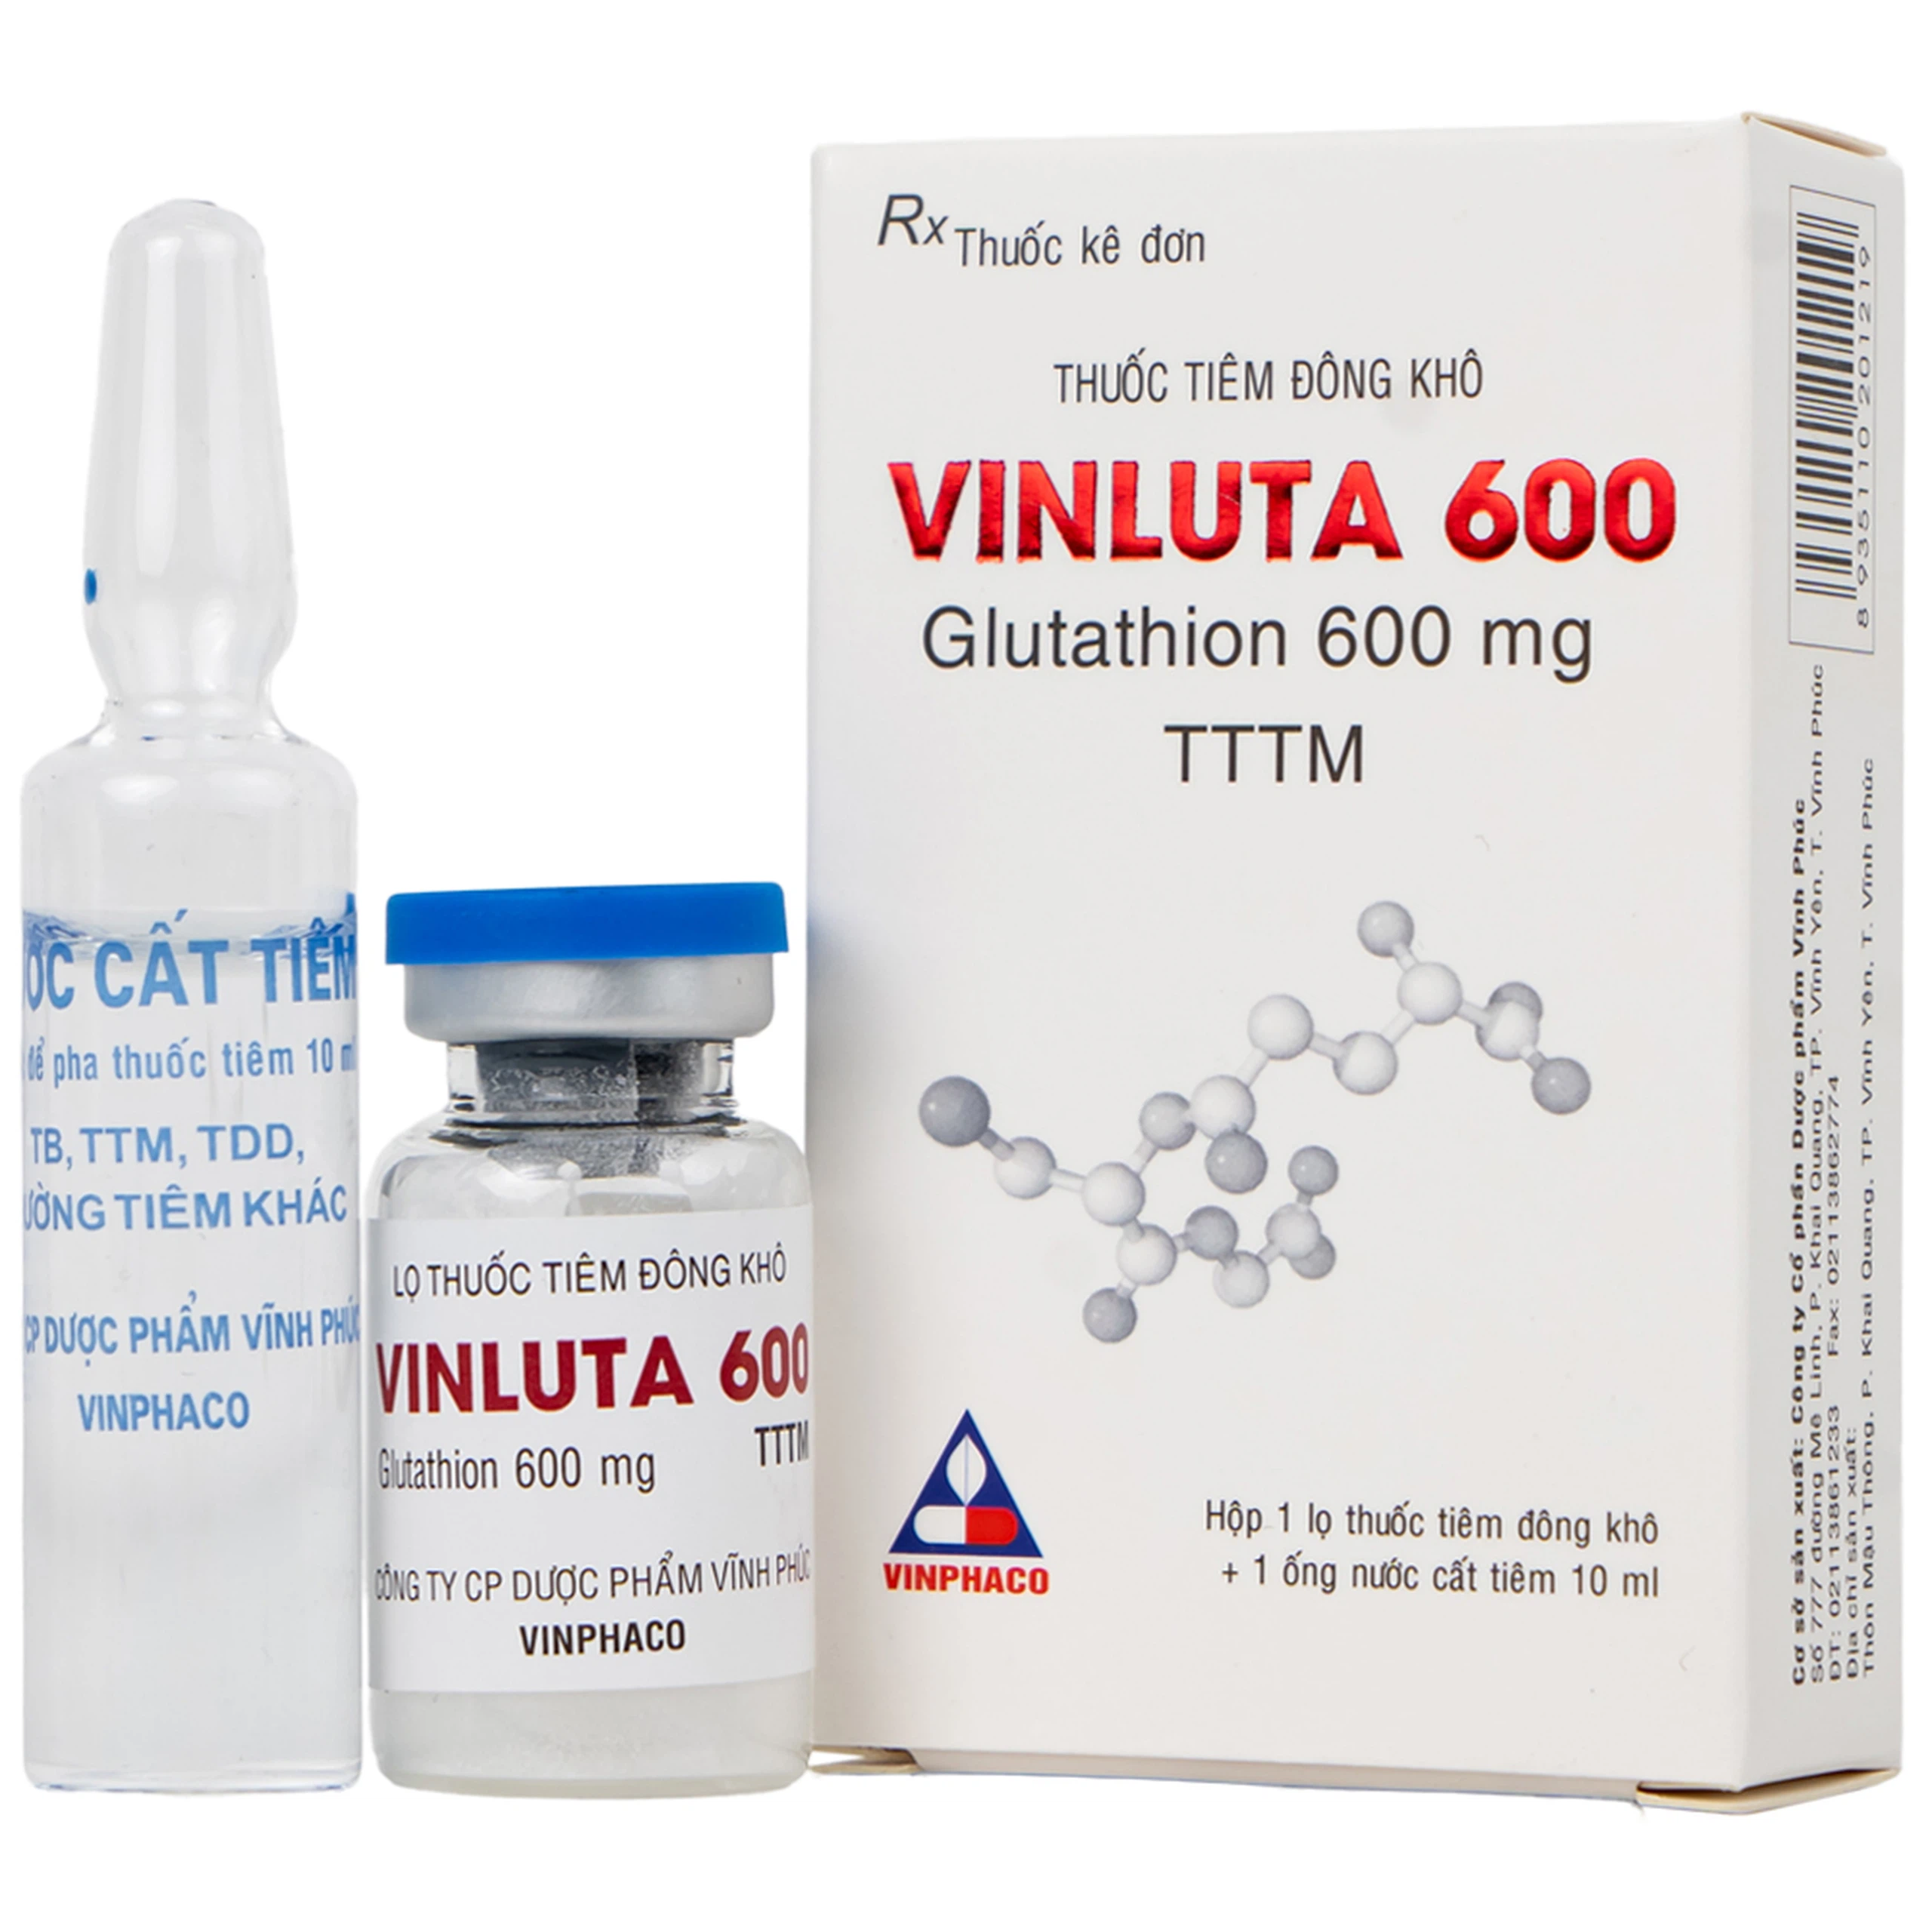 Thuốc tiêm Vinluta 600 Vinphaco giảm độc tính của xạ trị và hóa chất điều trị ung thư (1 lọ bột + 1 ống nước cất tiêm 10ml)